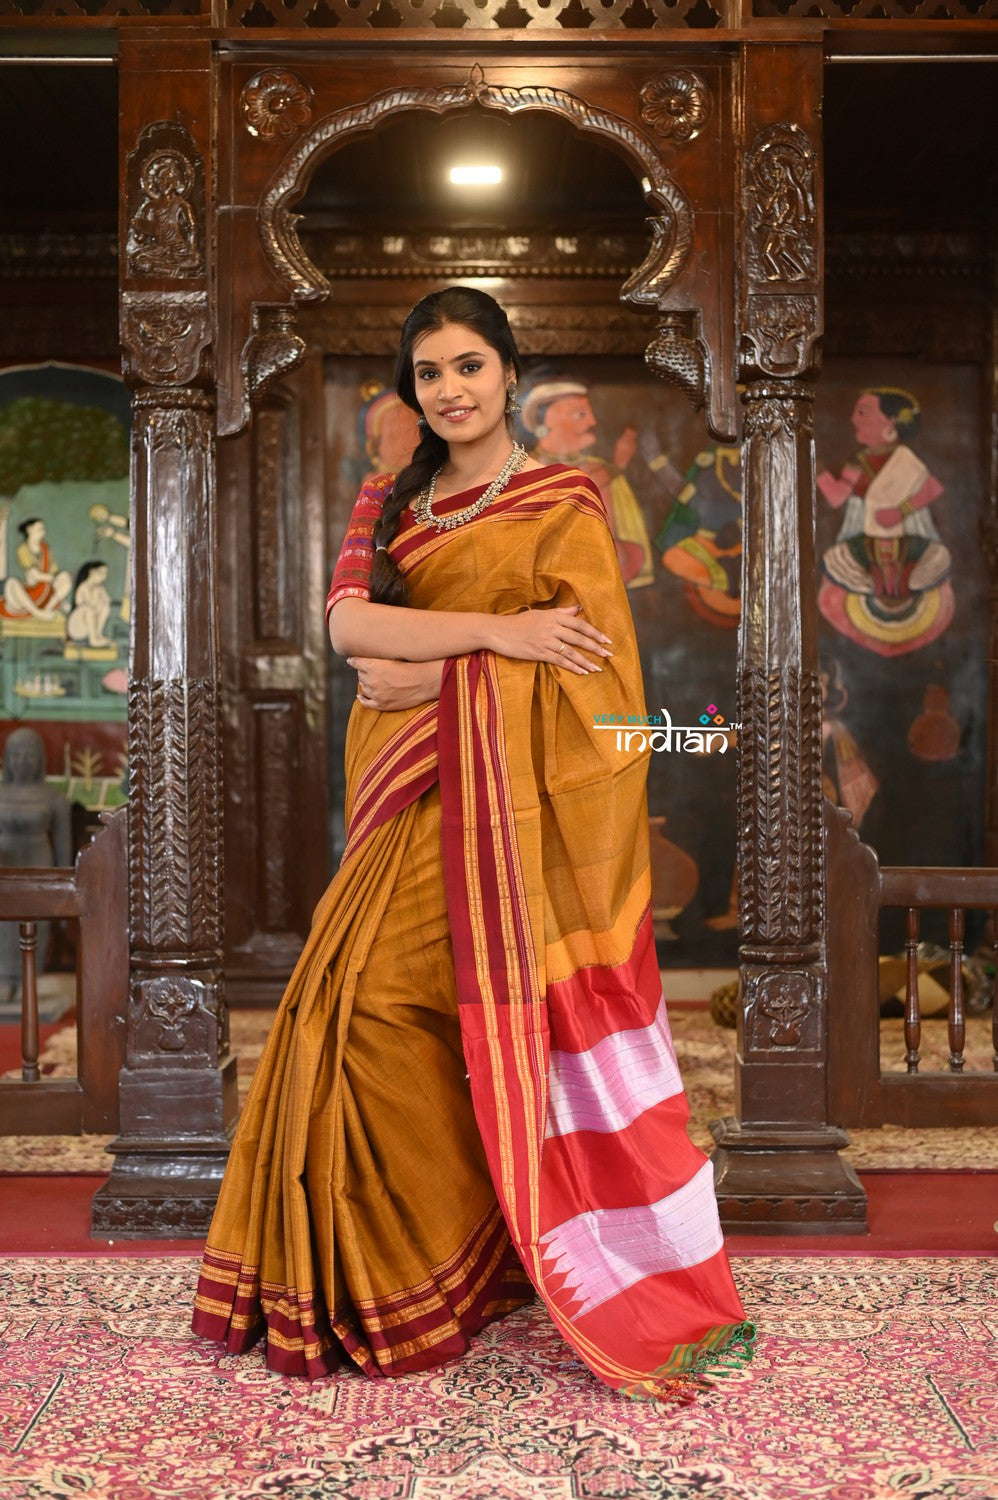 Ilkal handloom saree blouse design | Saree blouse designs, Sleeveless blouse  designs, Blouse designs